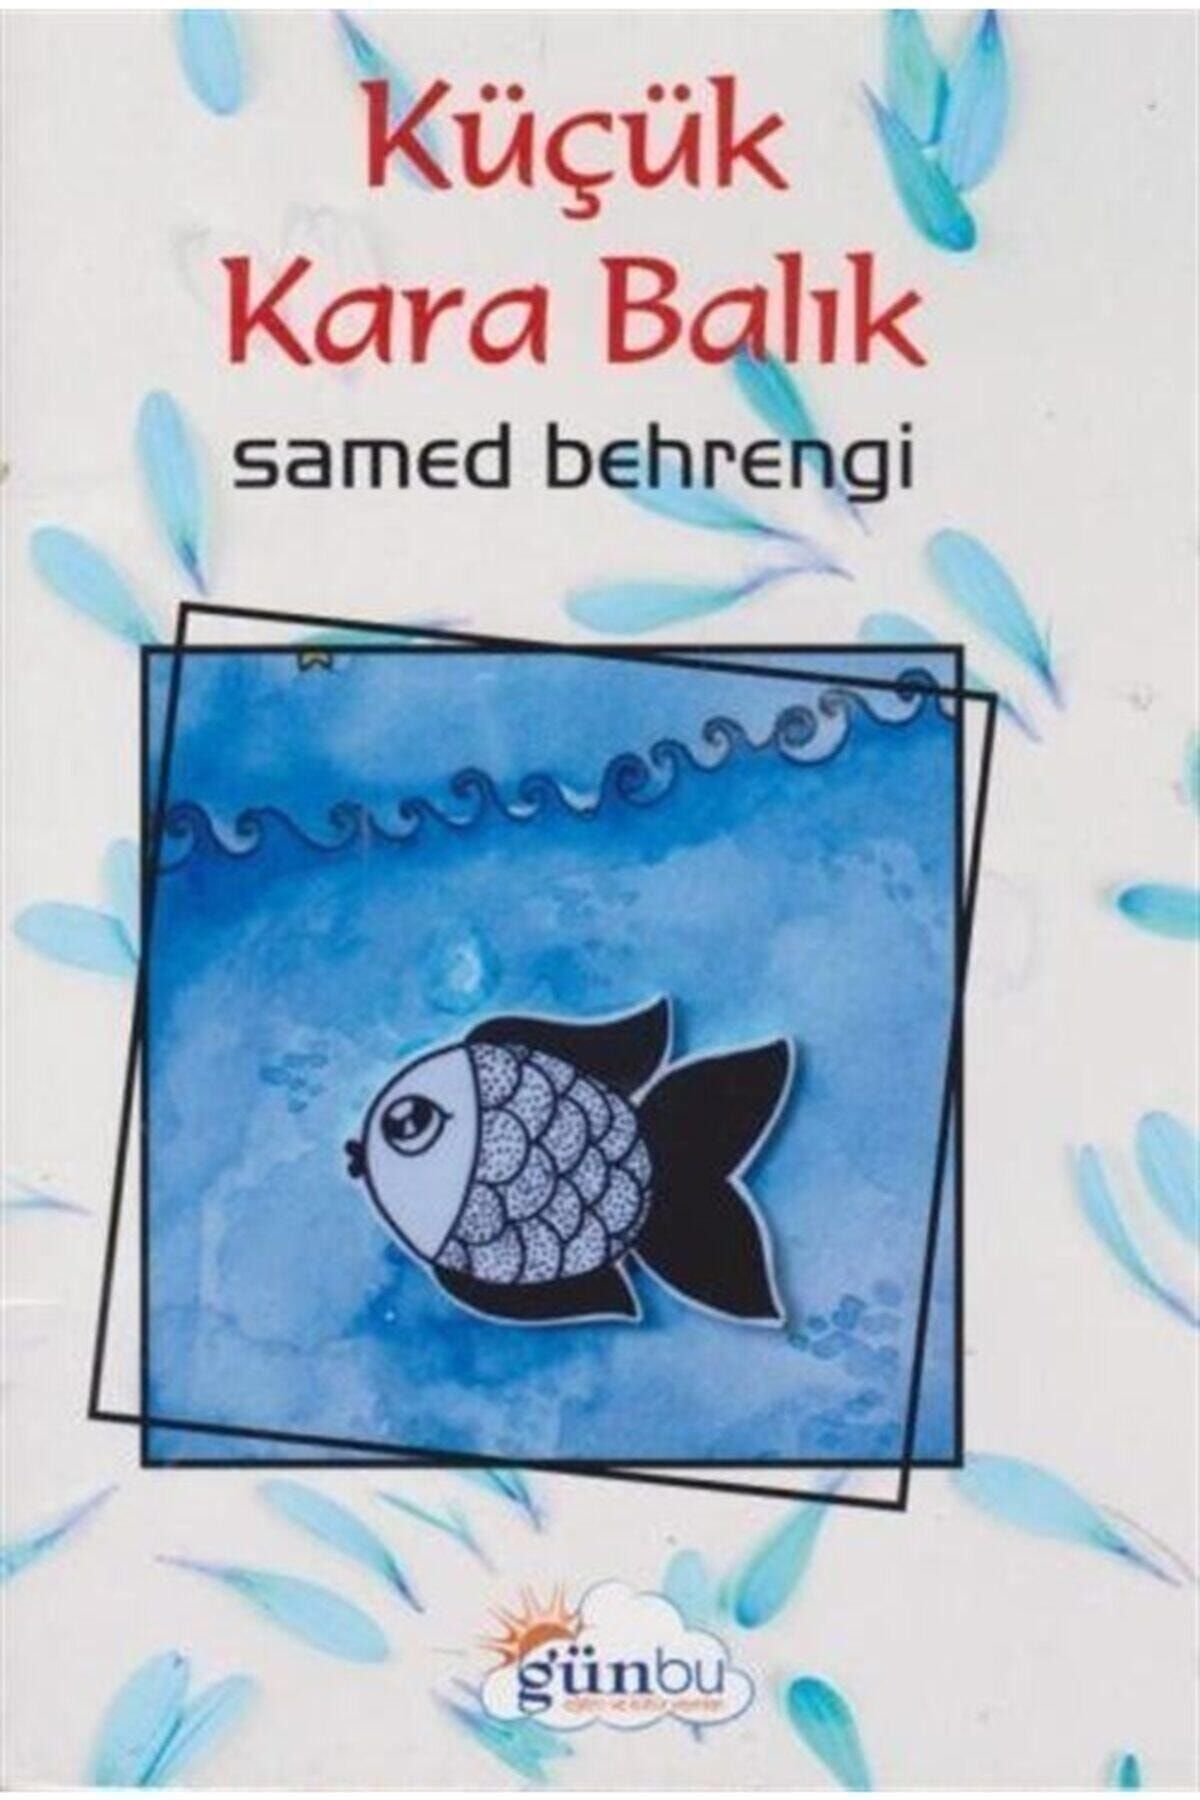 Günbu Eğitim ve Kültür Yayınları Küçük Kara Balık